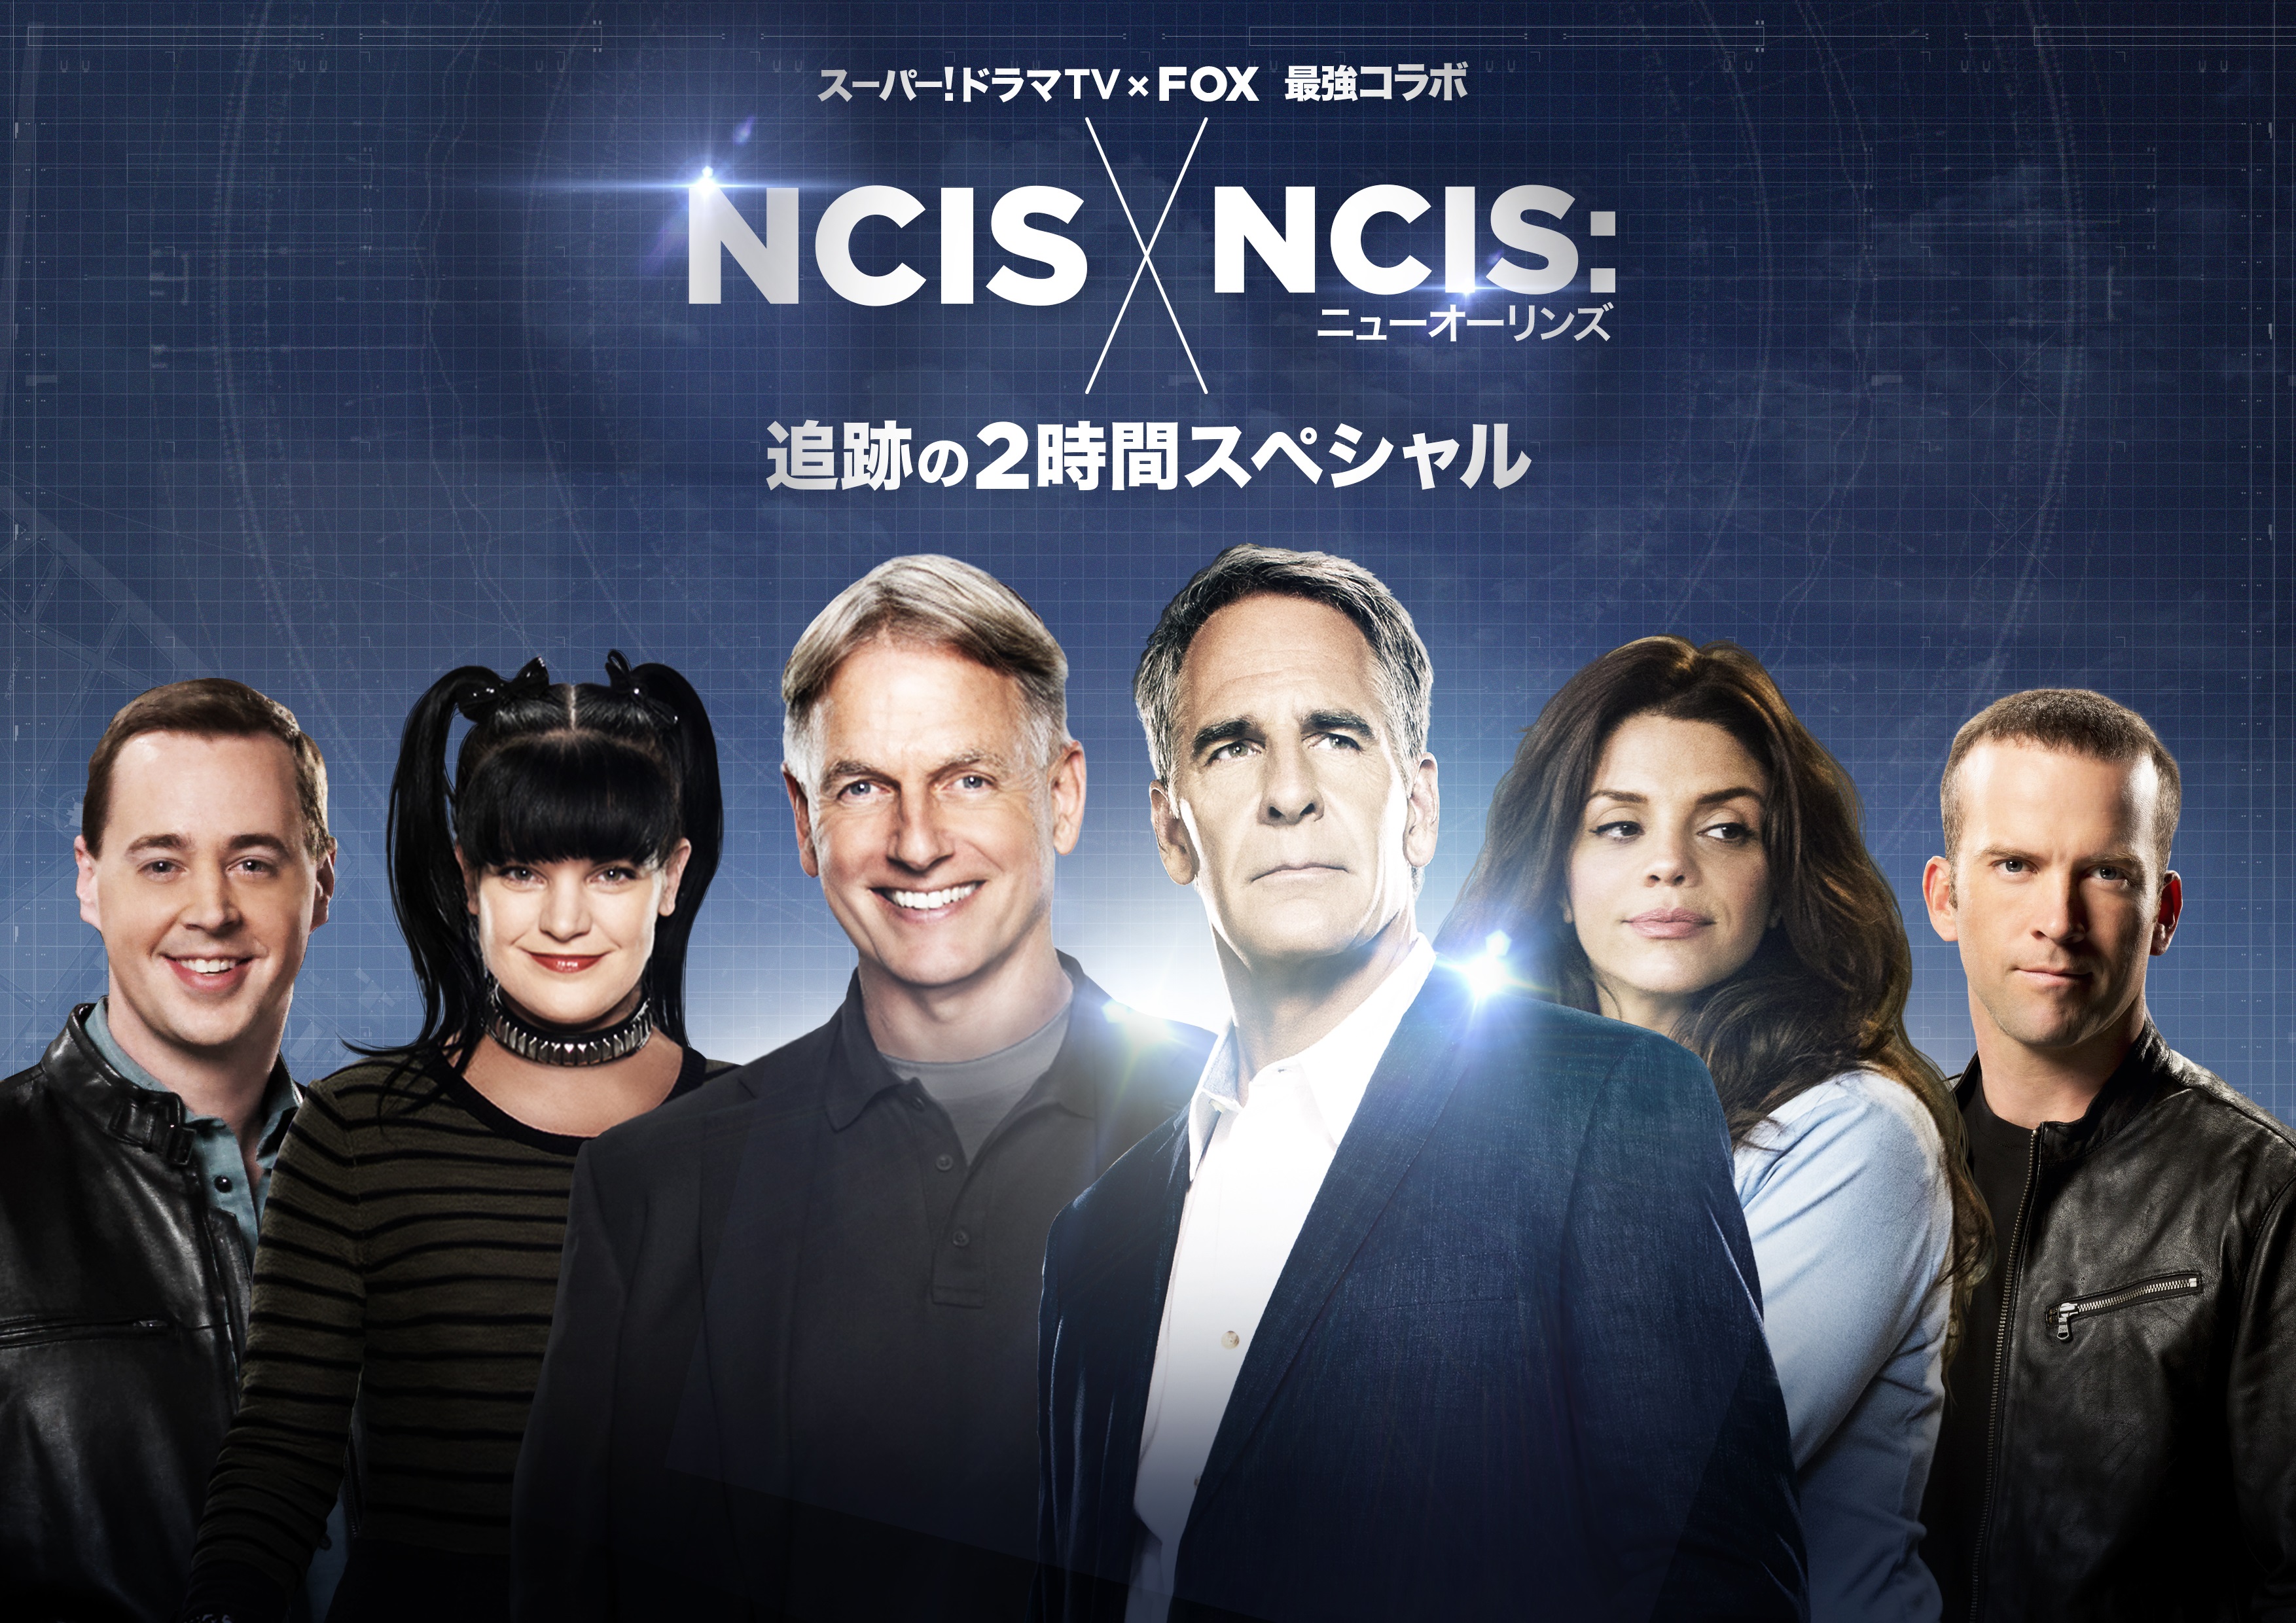 [SdTV]NCIS NO NCIS_Horizontal.jpg